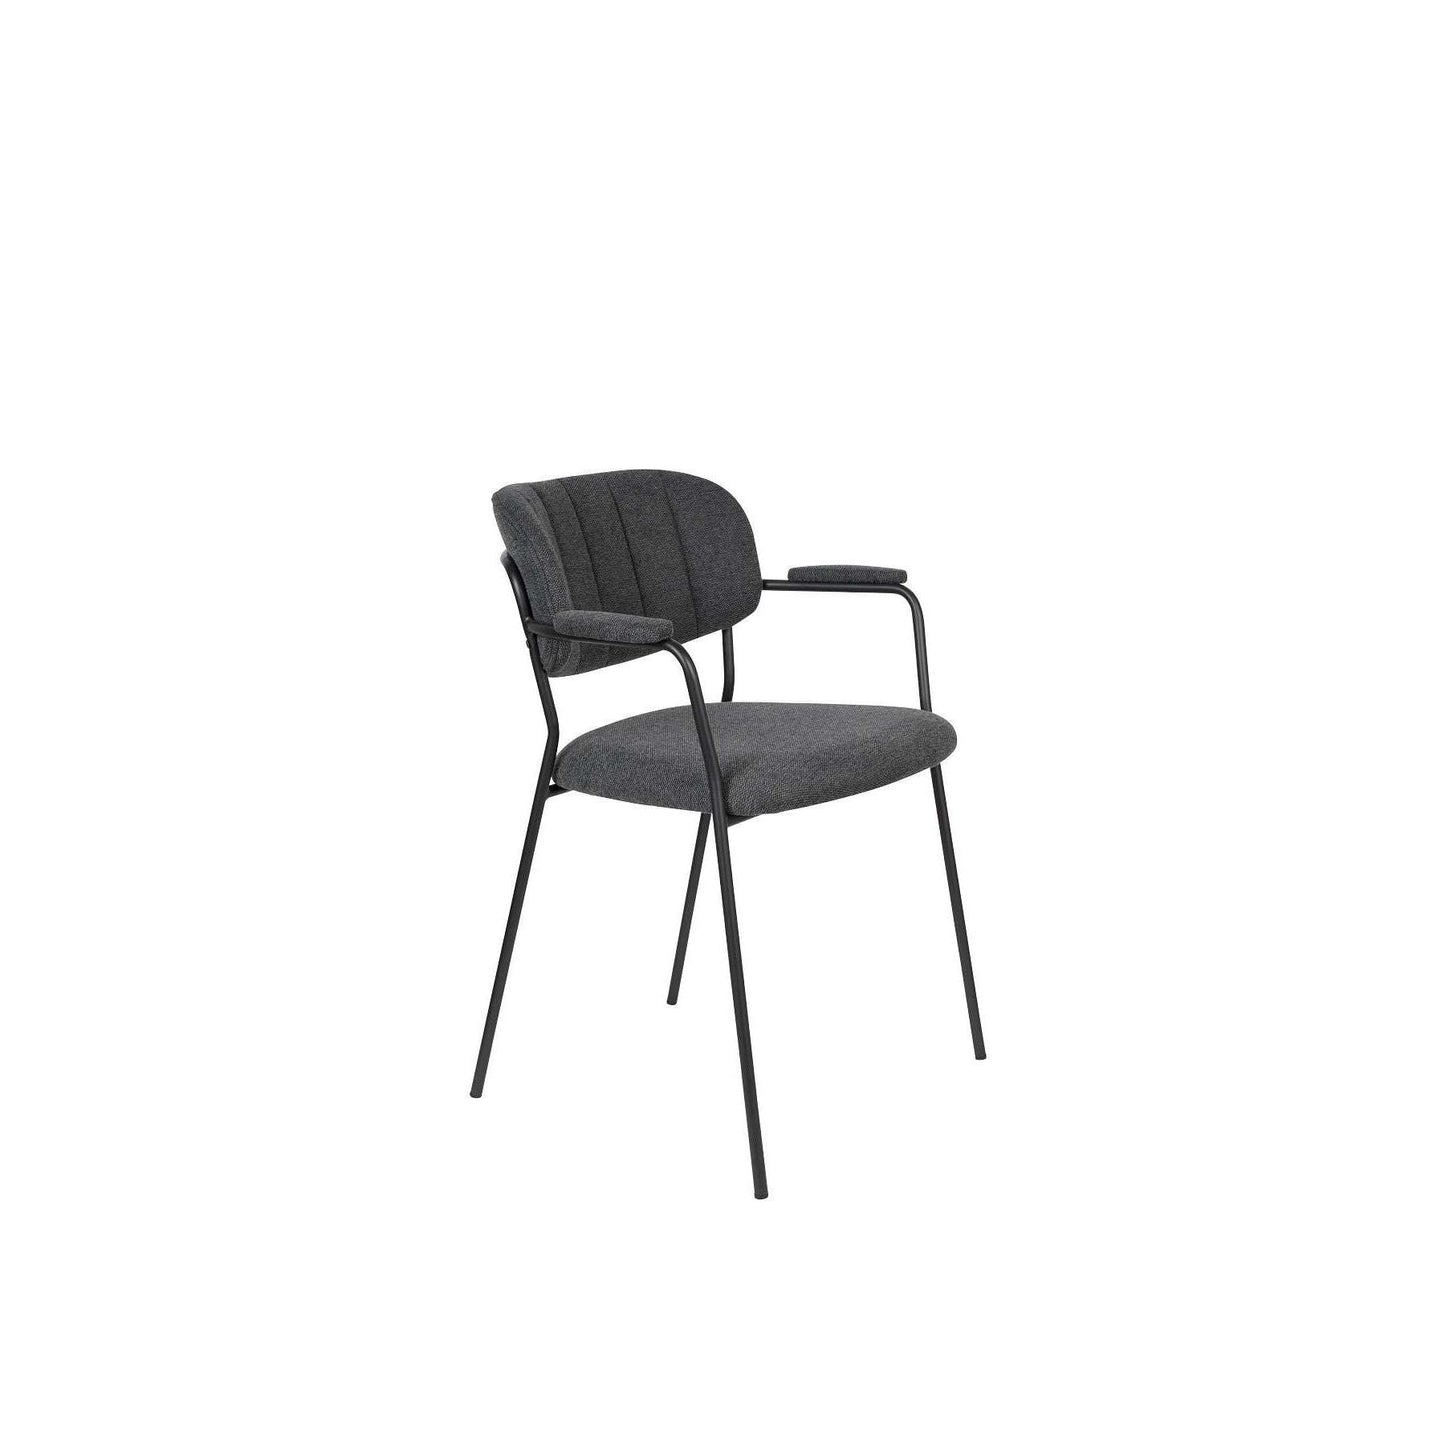 Staerkk stoel met armleuningen jolien zwart/donker grijs 56 x 60,5 x 78 cm